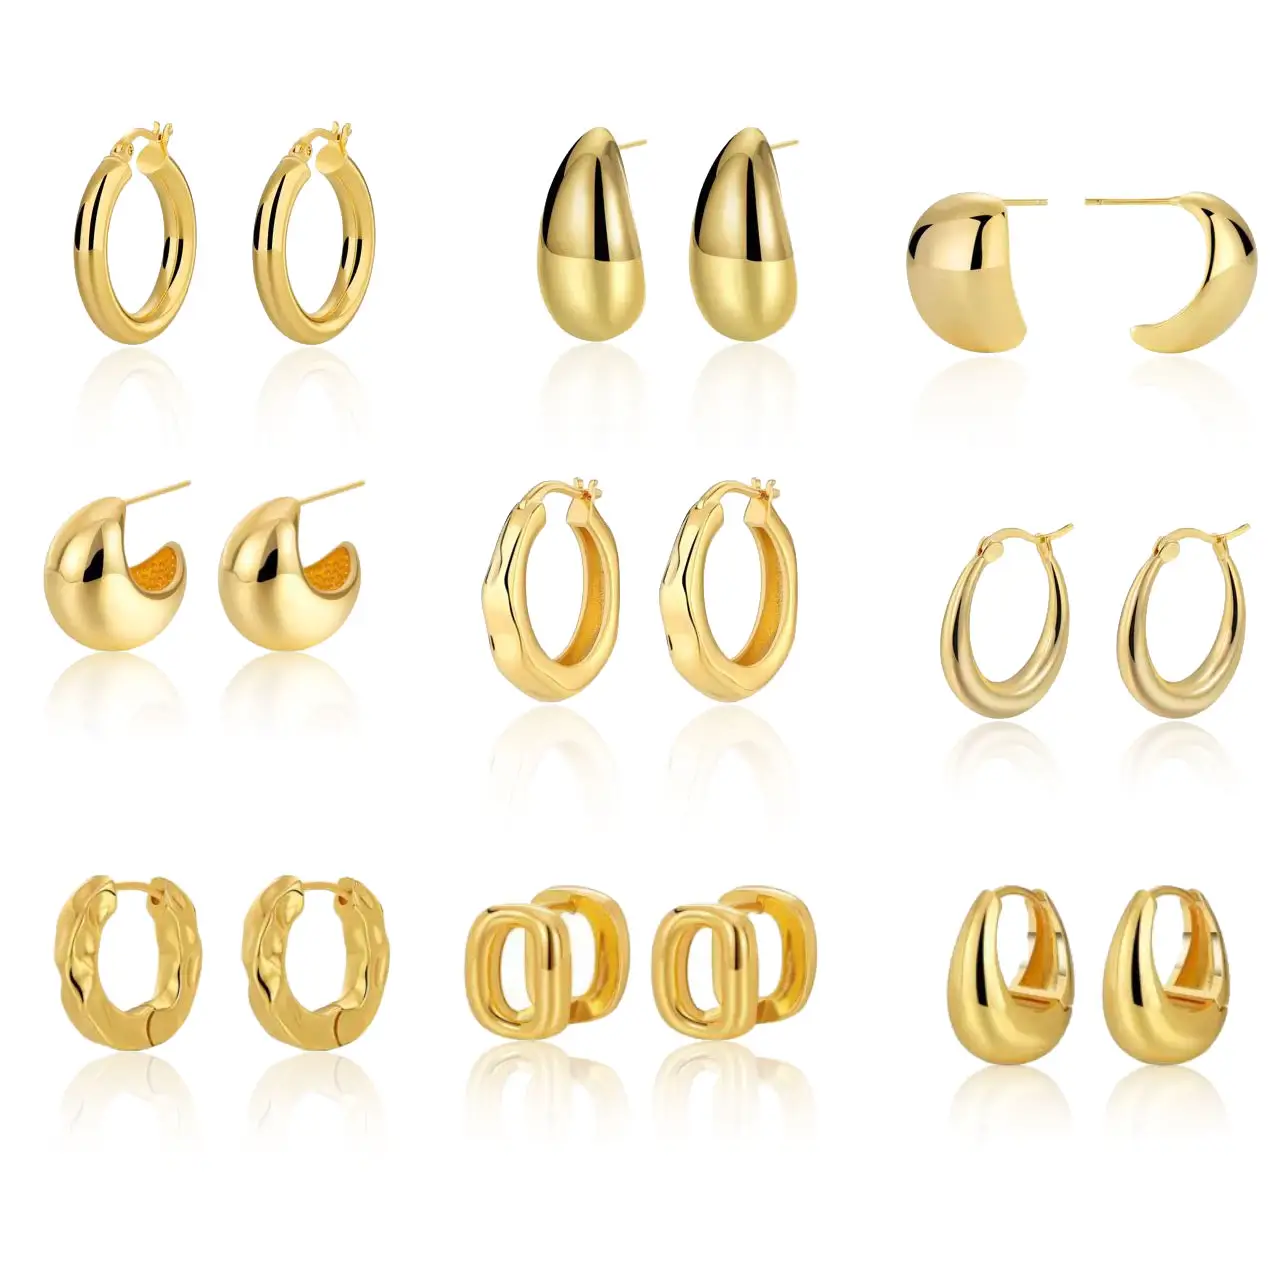 Оптовая продажа, минималистские ювелирные изделия, латунные металлические многостильные круглые кольца 18 карат, позолоченные гладкие простые серьги-обручи для женщин